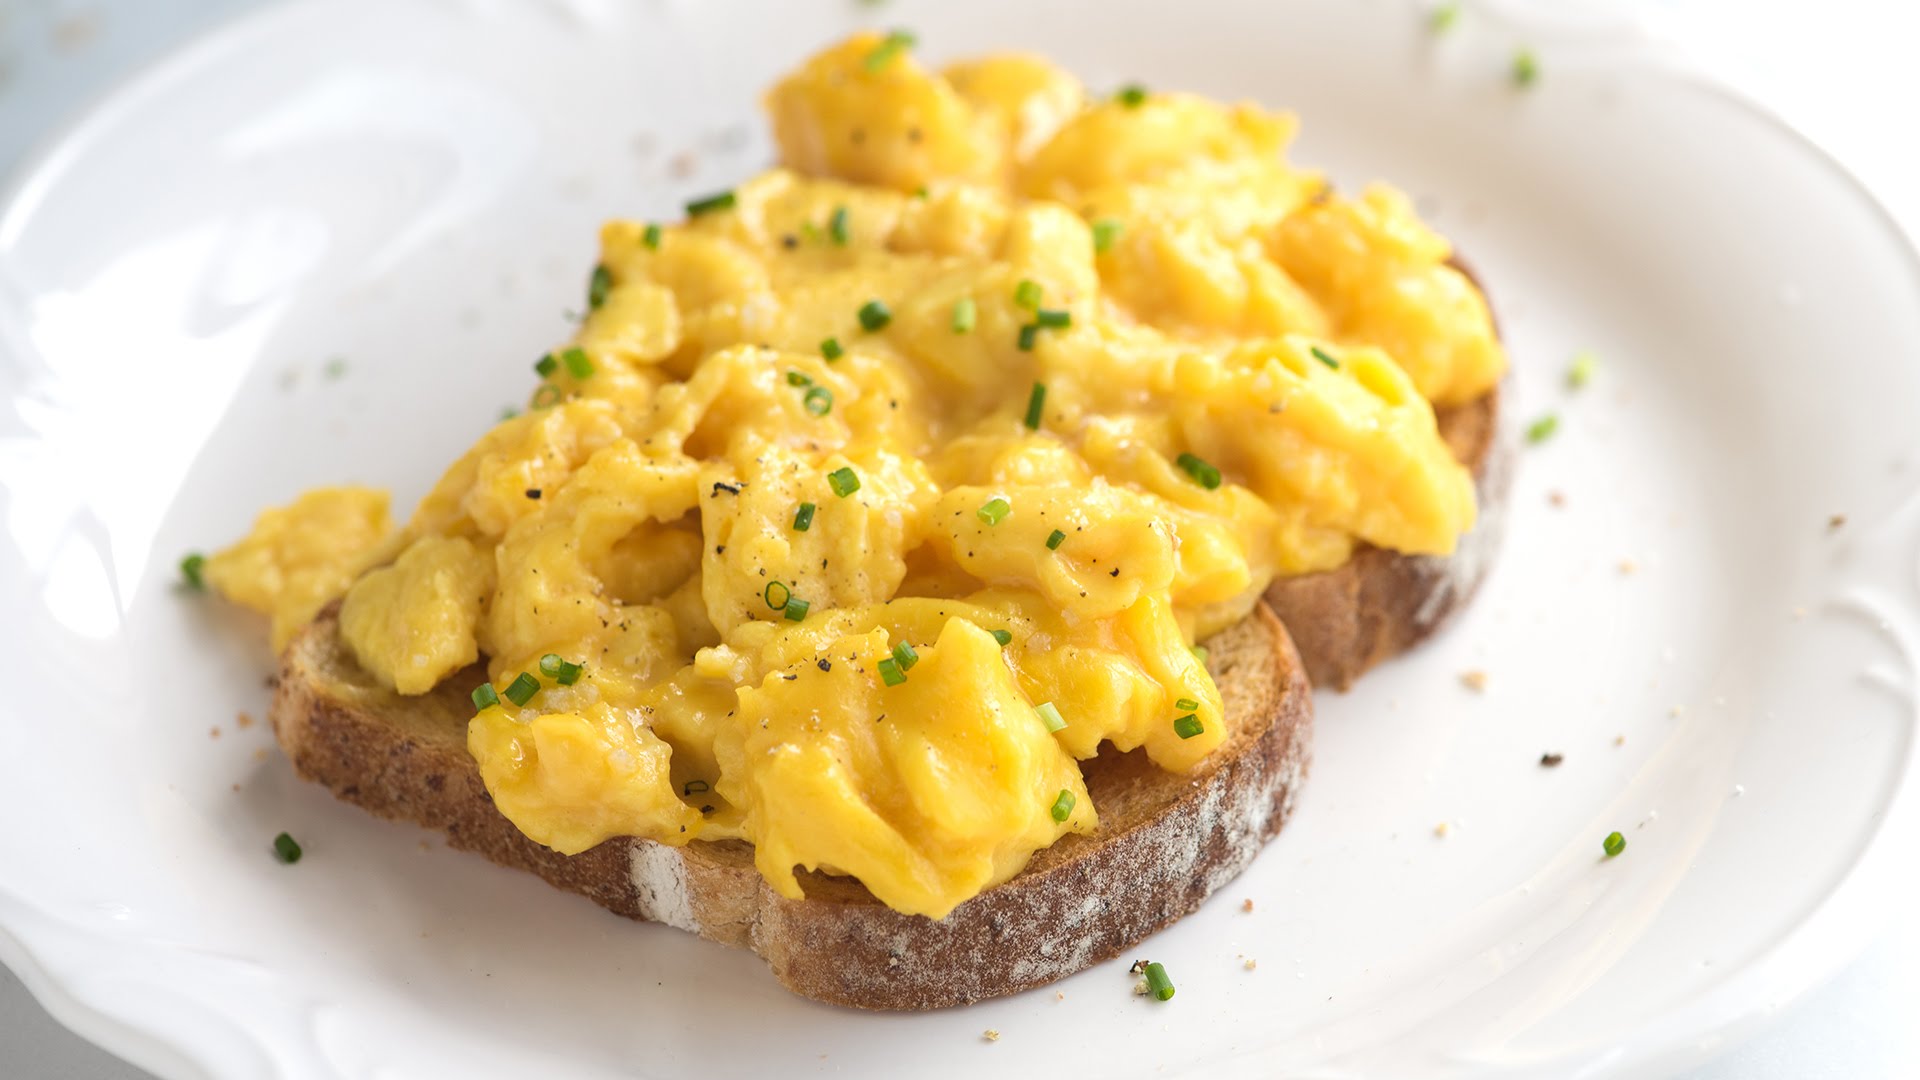 how to make scrambled eggs